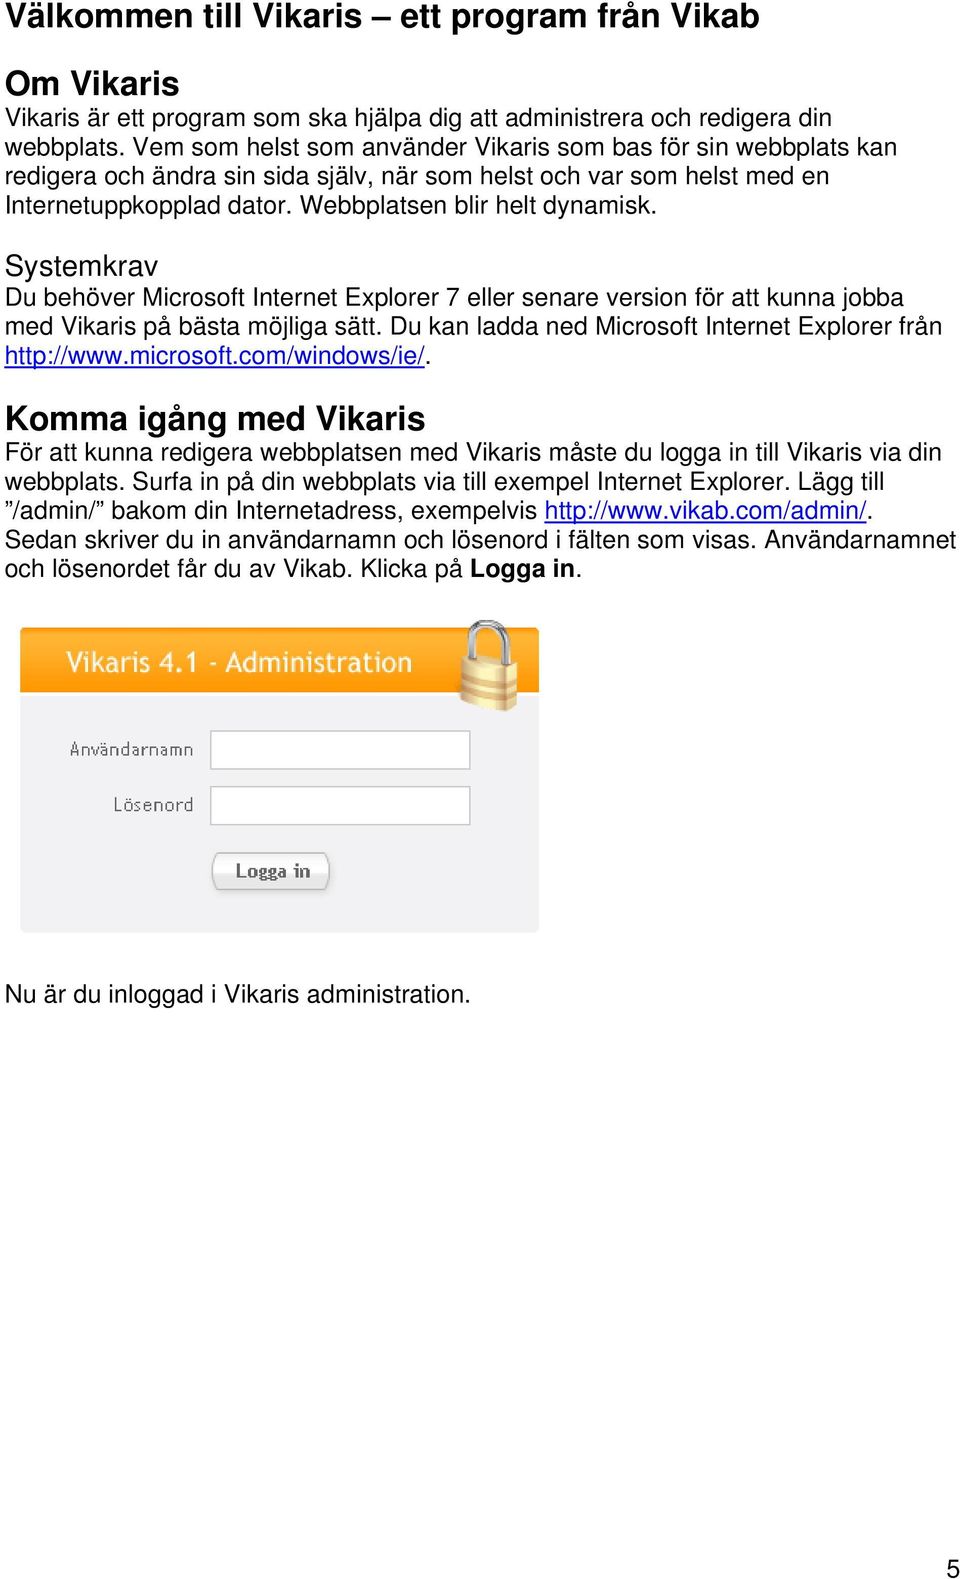 Systemkrav Du behöver Microsoft Internet Explorer 7 eller senare version för att kunna jobba med Vikaris på bästa möjliga sätt. Du kan ladda ned Microsoft Internet Explorer från http://www.microsoft.